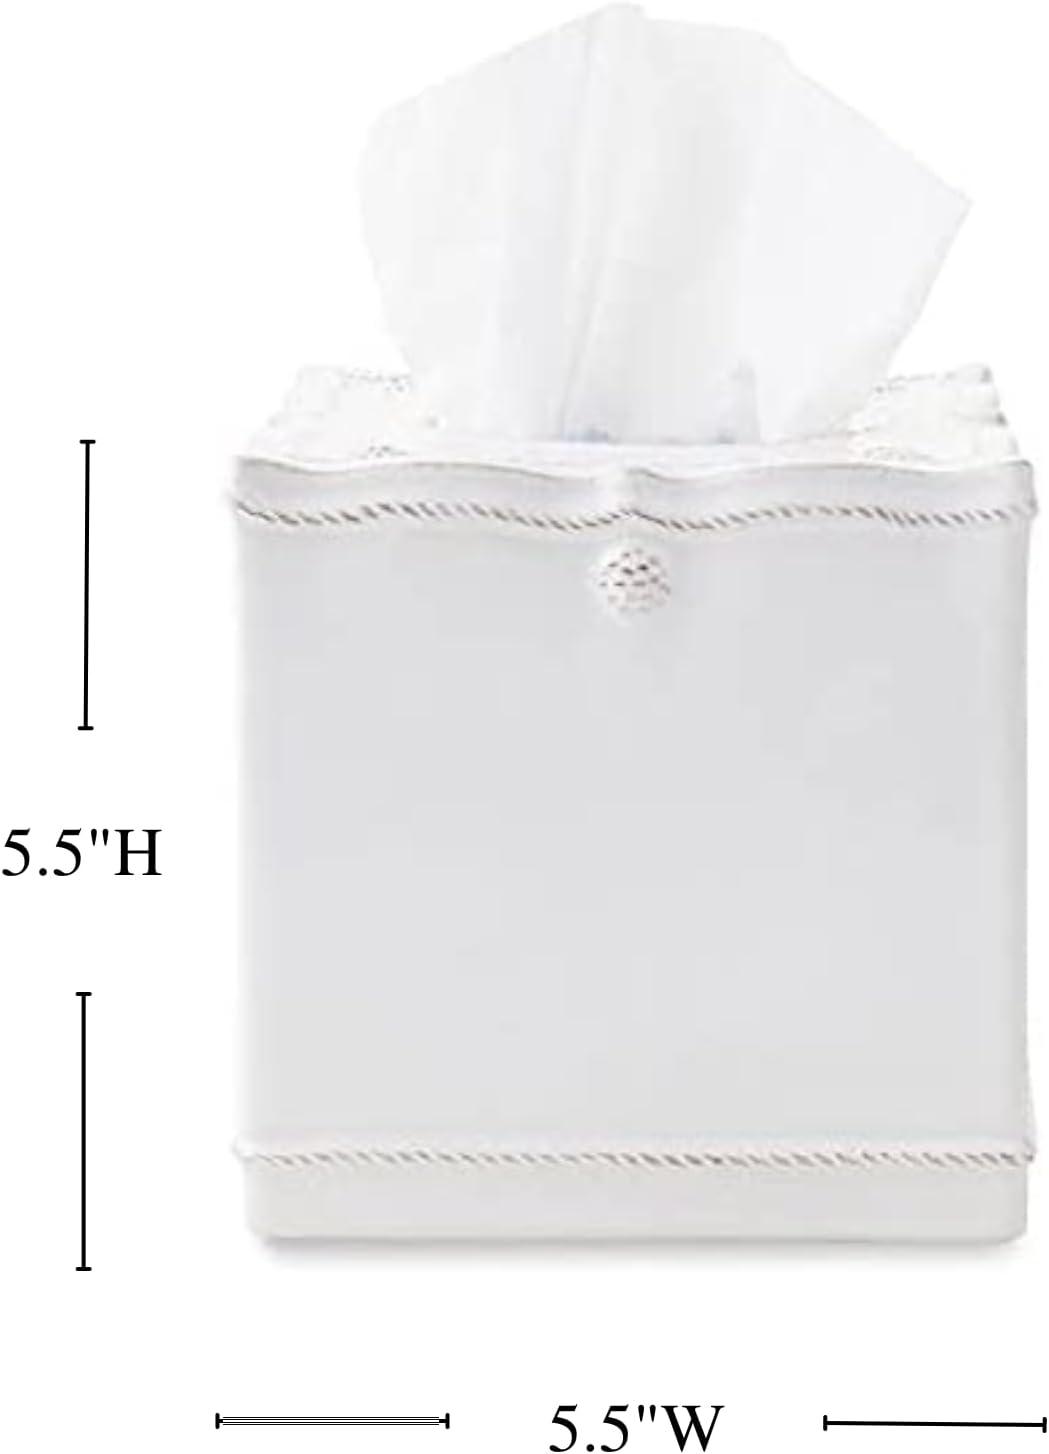 Elegant Whitewash Ceramic Tissue Box Cover with Berry & Thread Motif